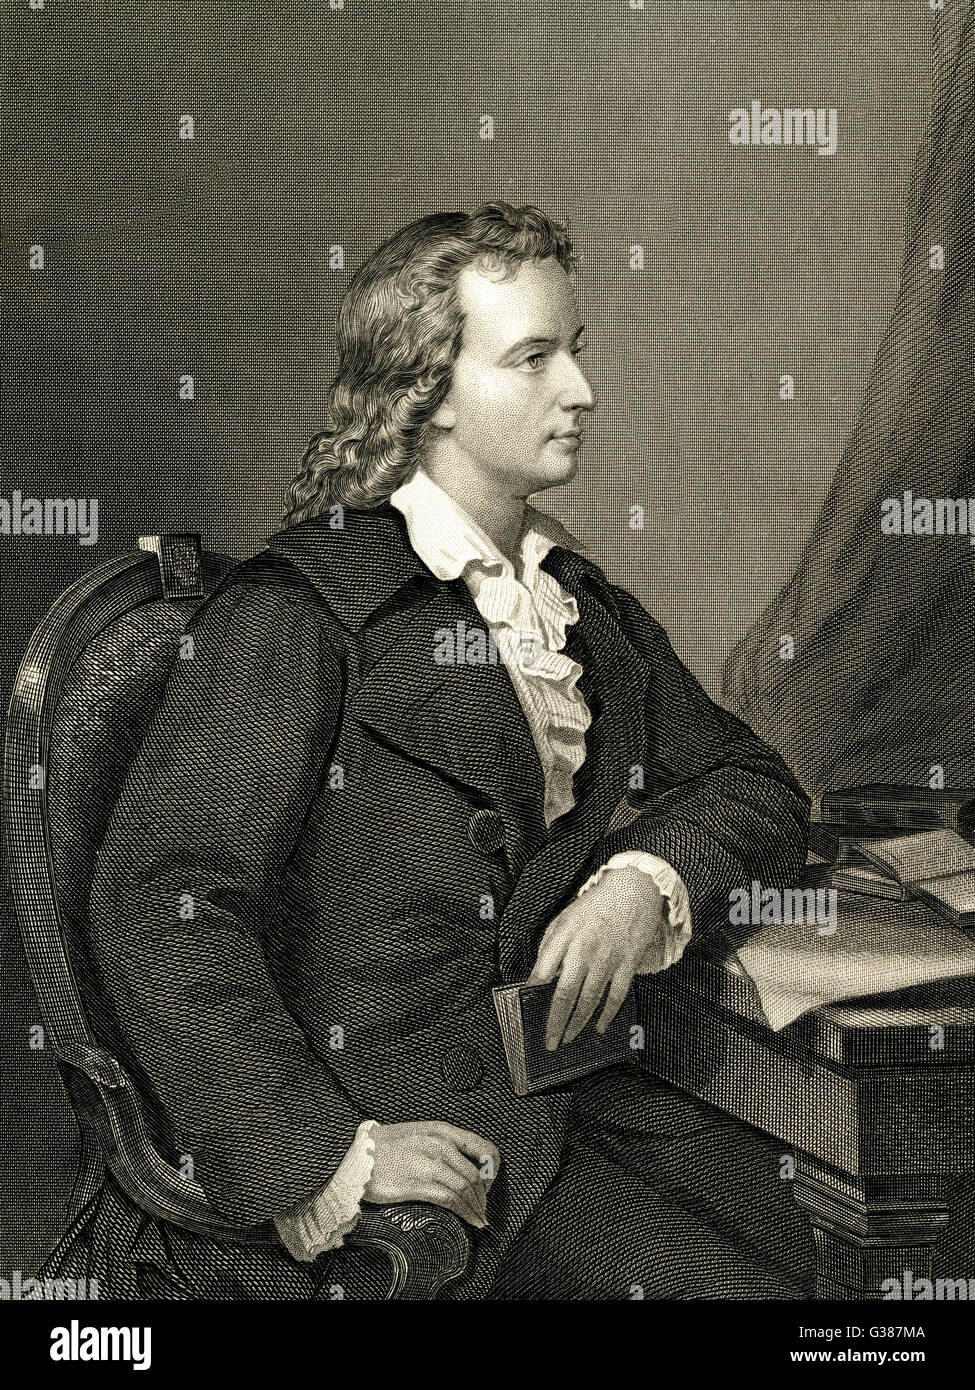 JOHANN CHRISTOPH FRIEDRICH SCHILLER  German writer        Date: 1759 - 1805 Stock Photo